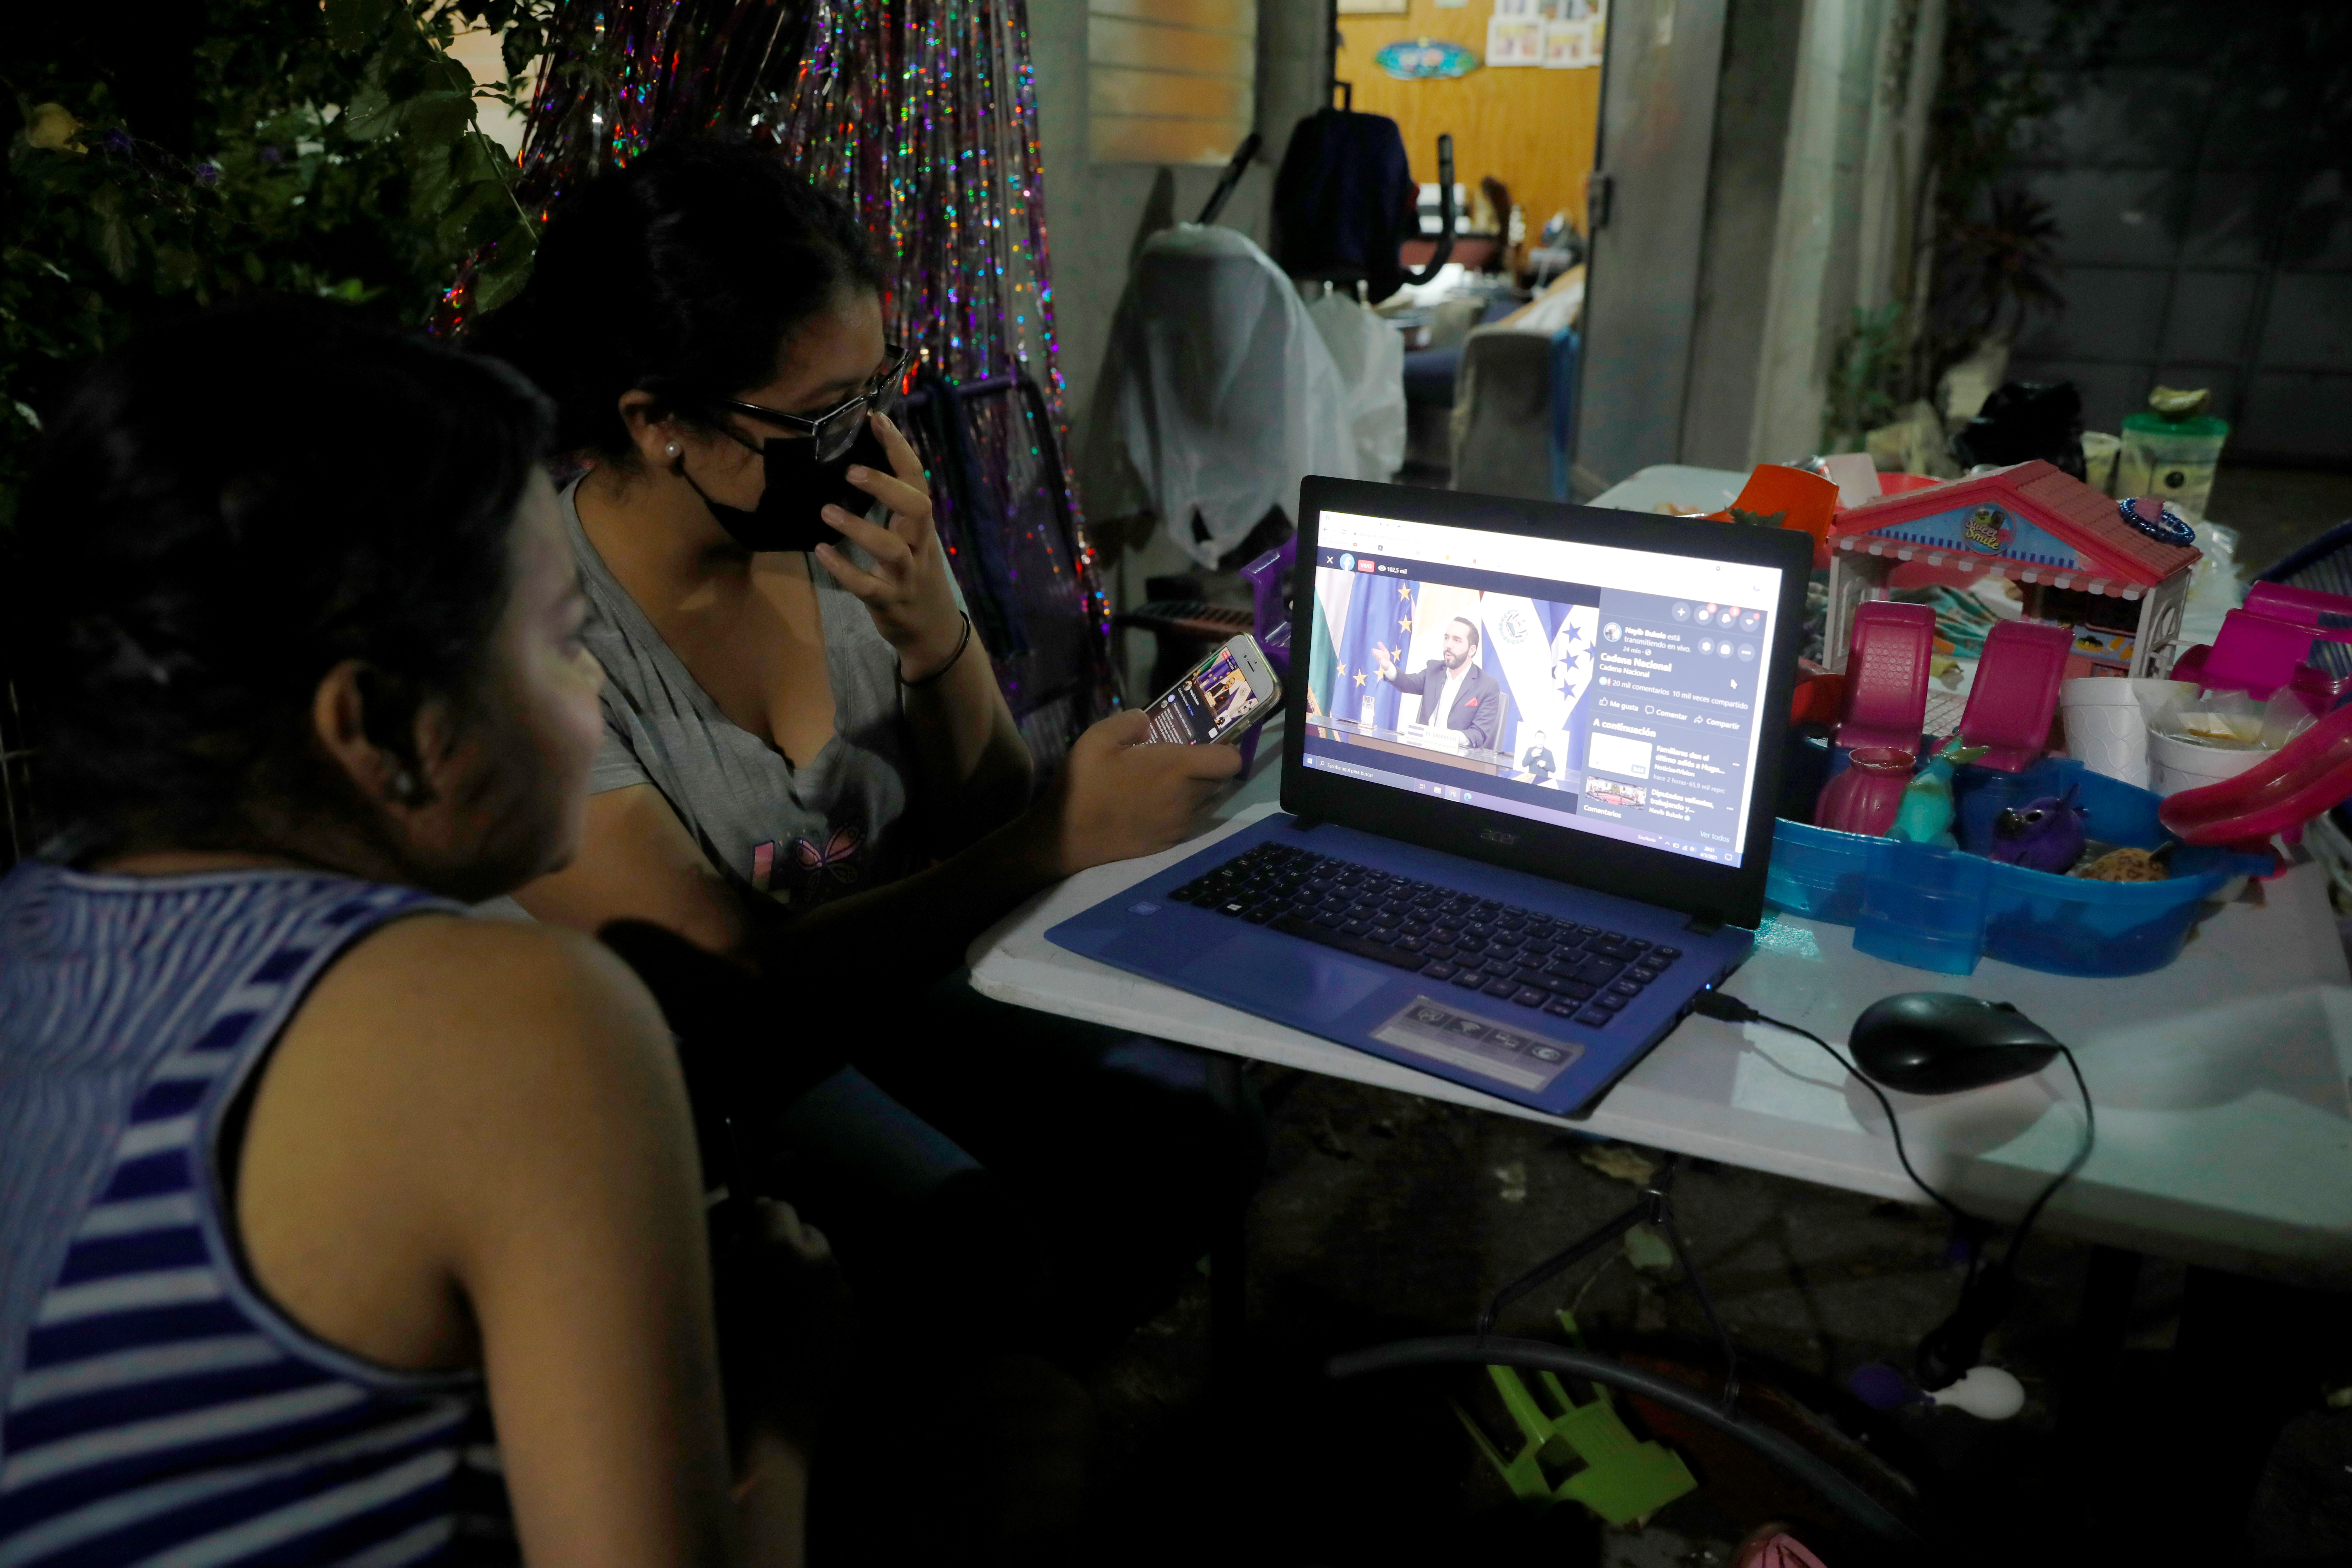 En medio de la pandemia, los usuarios se volcaron a las pantallas, tanto para consumir contenidos como para el trabajo y estudio (Foto: José Cabezas/ EFE)